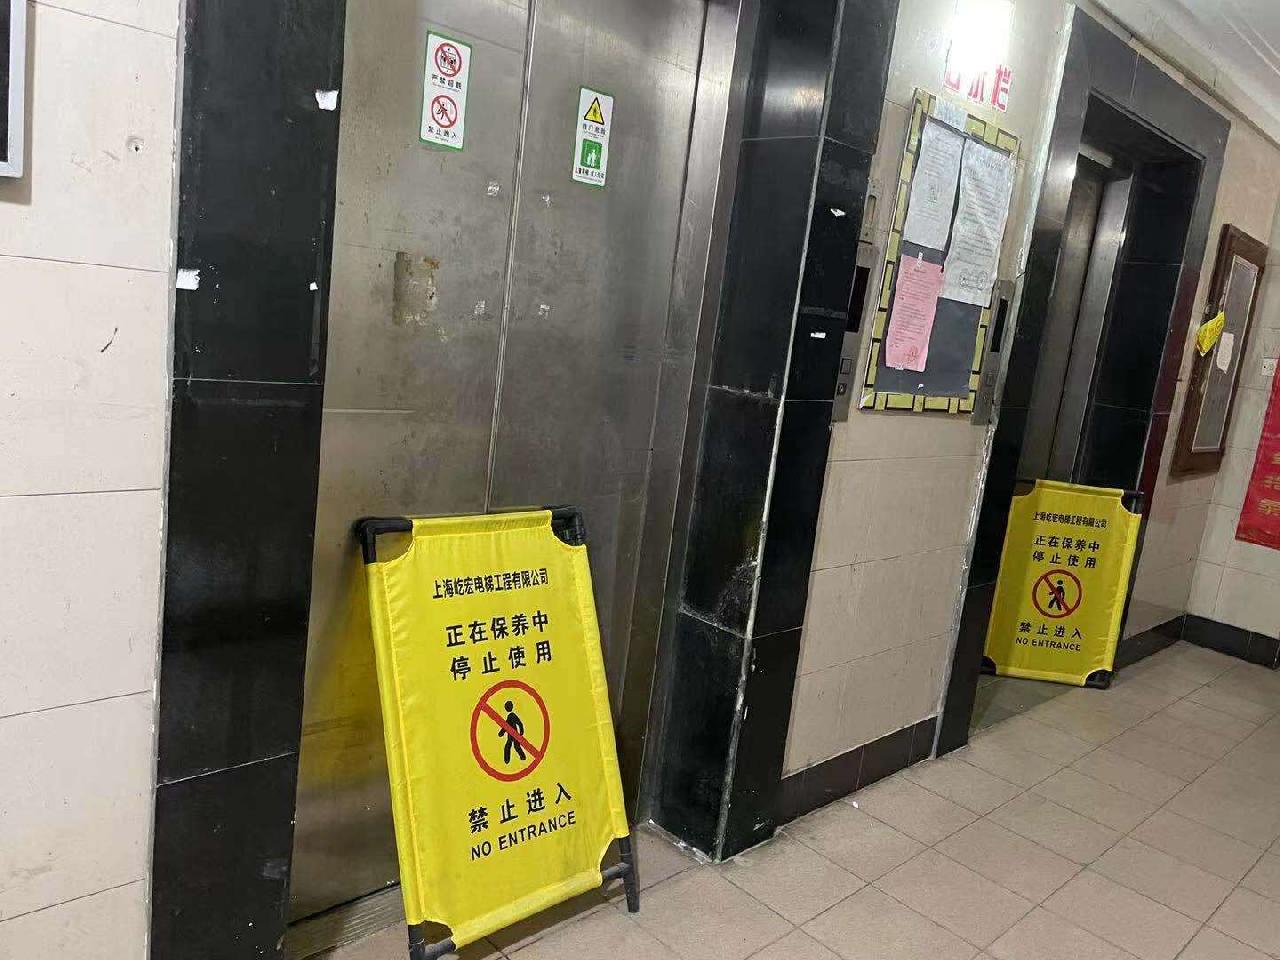 梅陇四村老旧电梯频出故障,91岁坐轮椅老太被困楼下12小时后被抬上楼